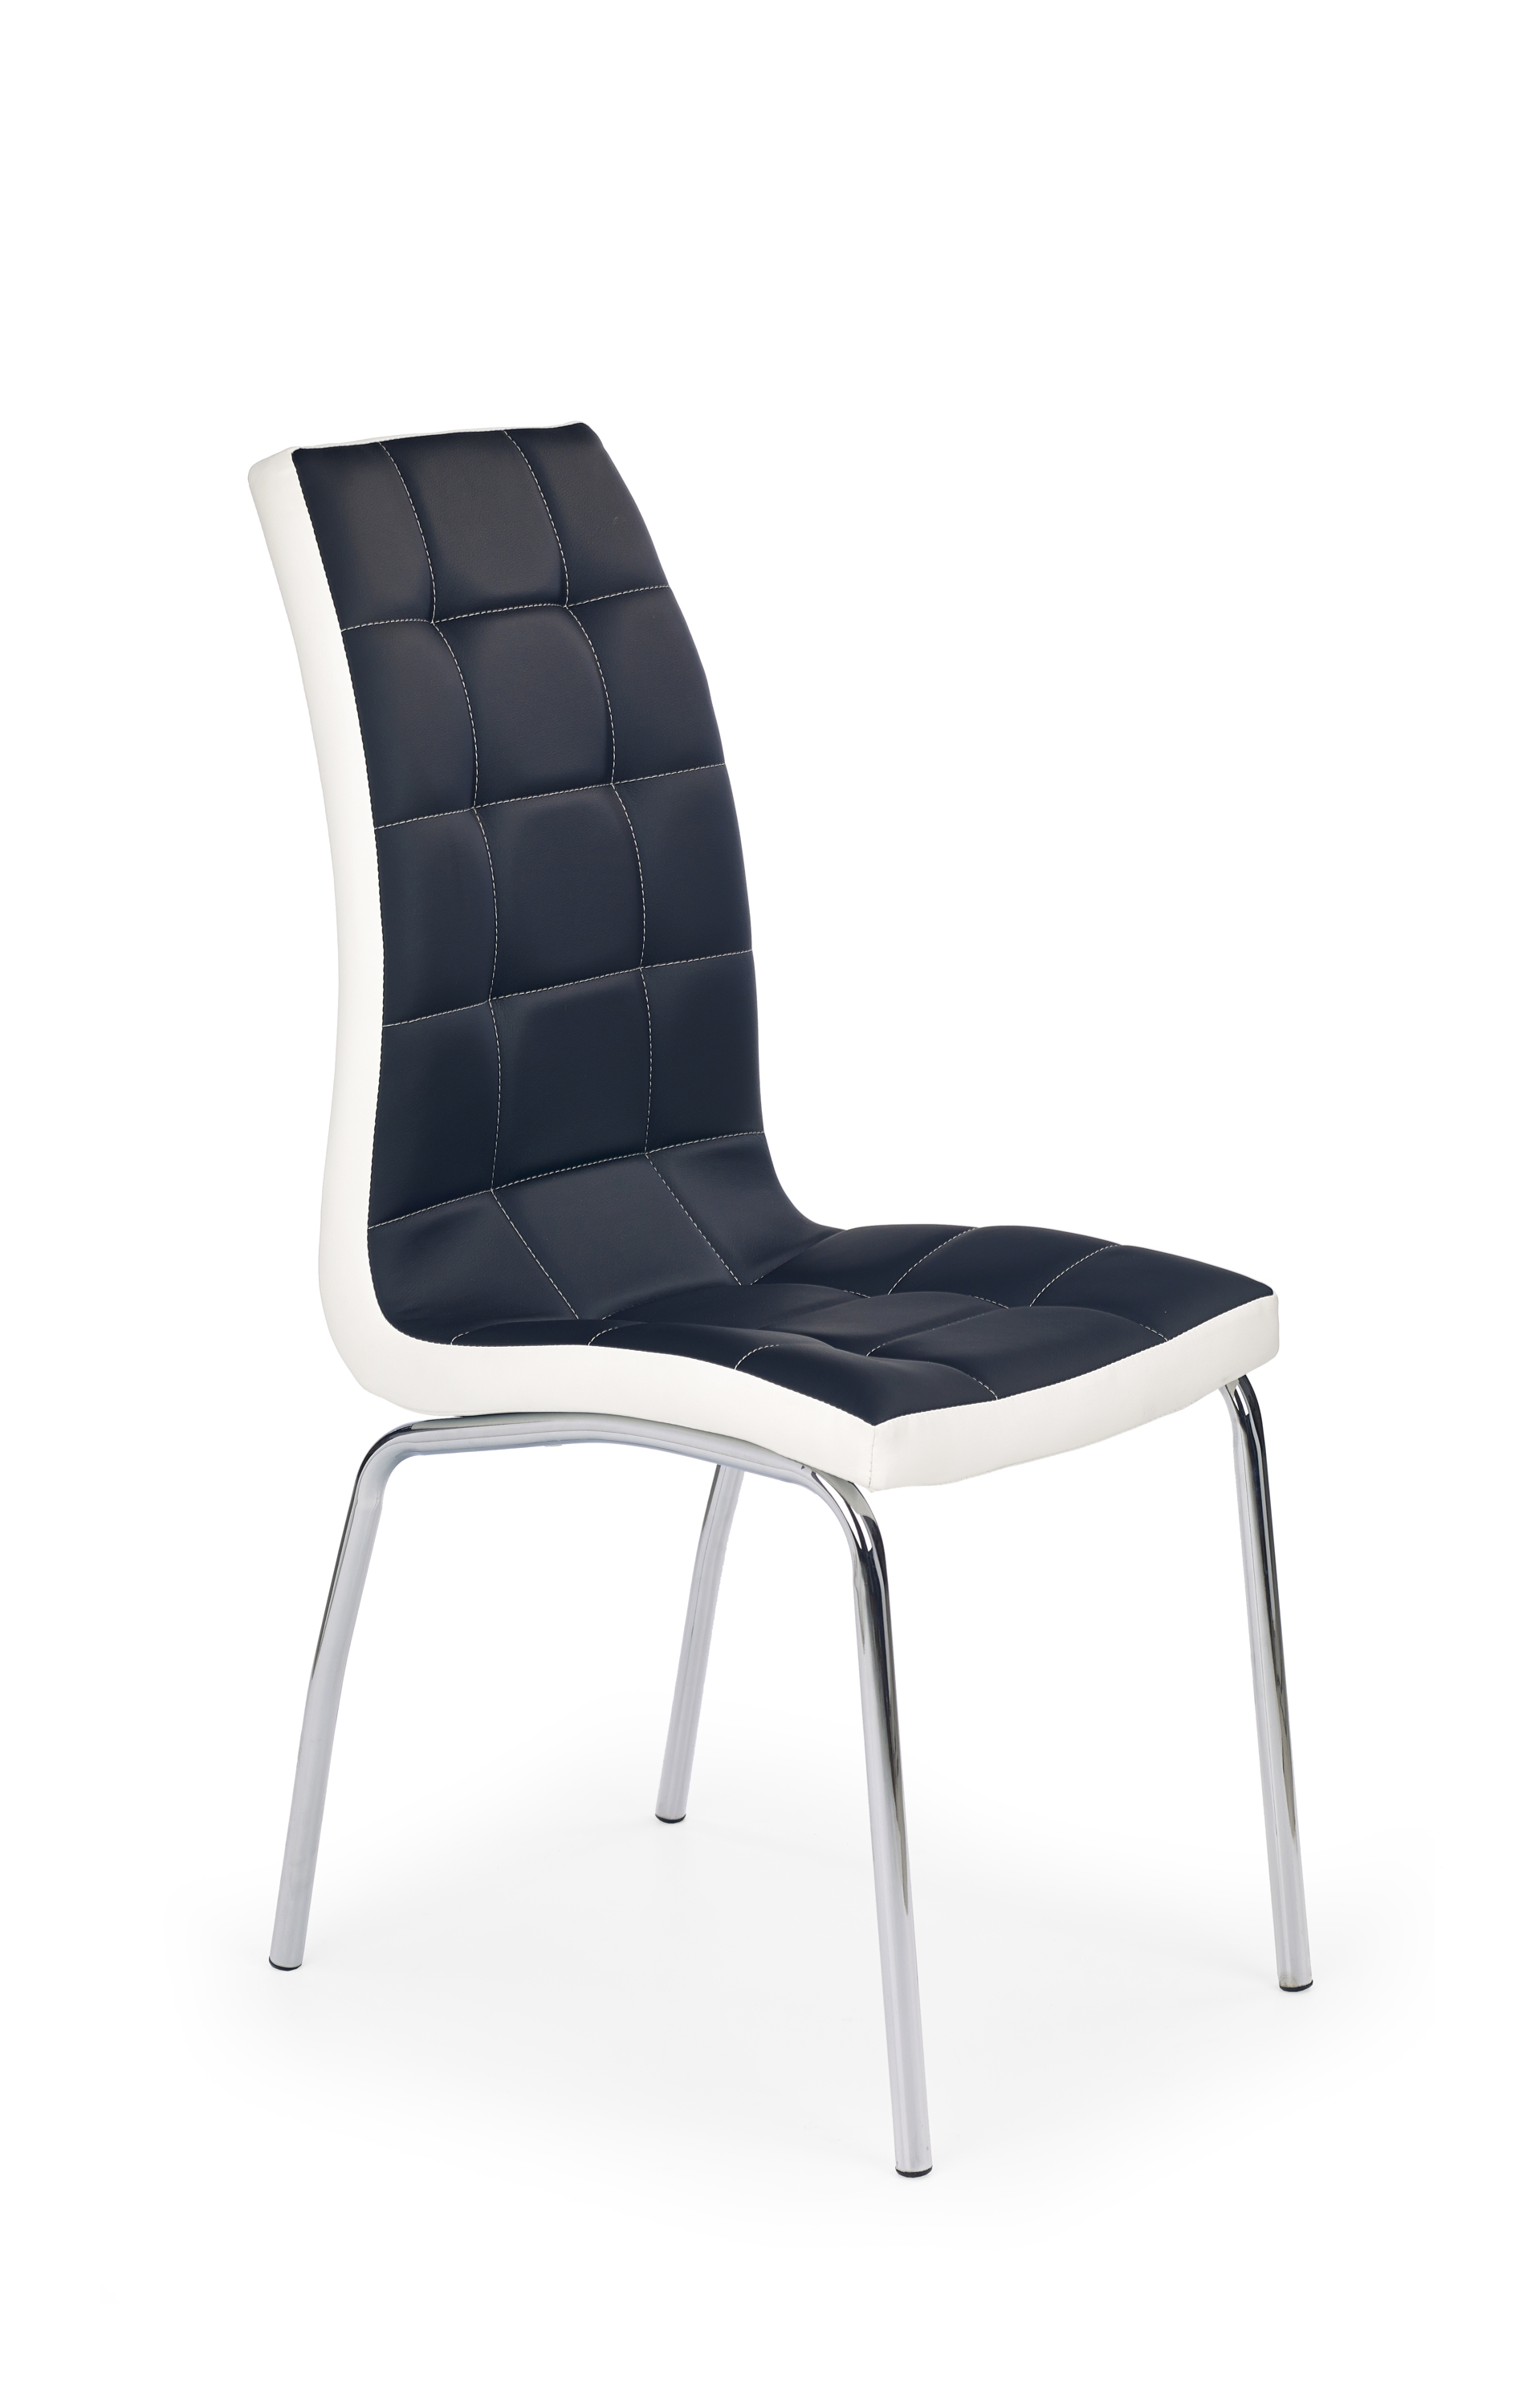 Židle K186 - Fekete / bílý k186 Židle Fekete / bílý